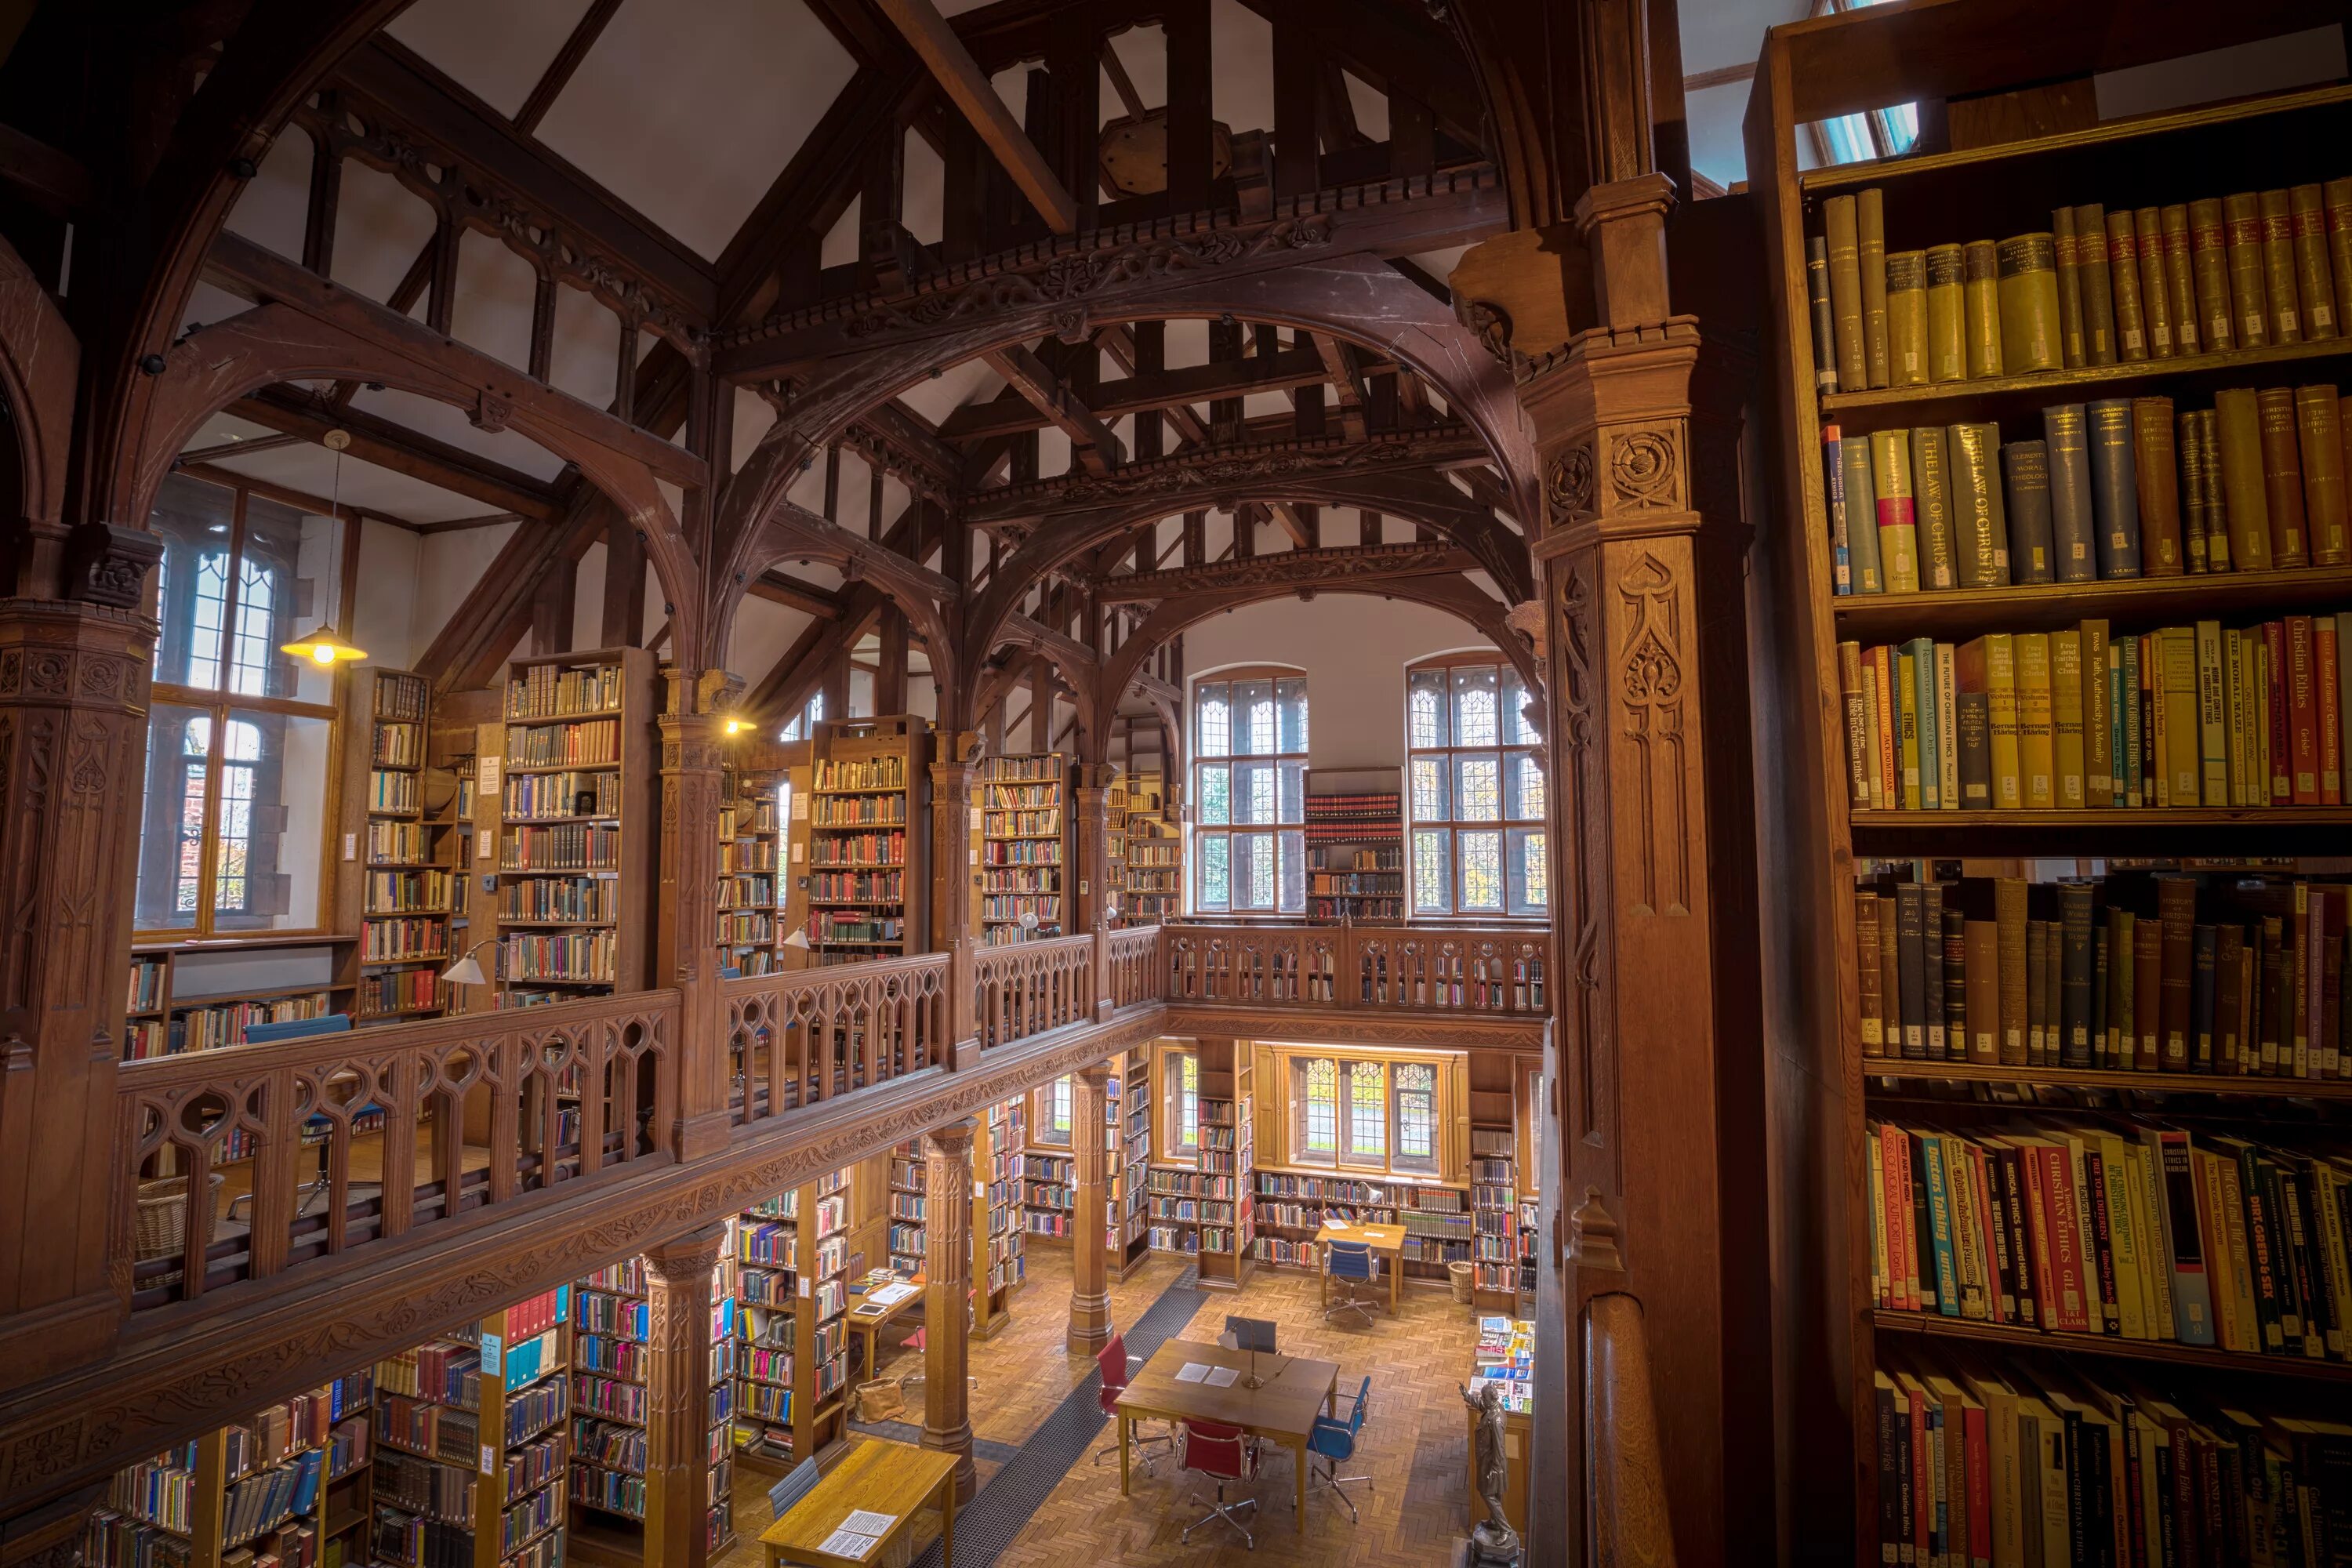 Библиотека в ней находится. Библиотека Джорджа Пибоди, Балтимор, США. Библиотека аббатства Адмонт, Австрия. Старинная библиотека.